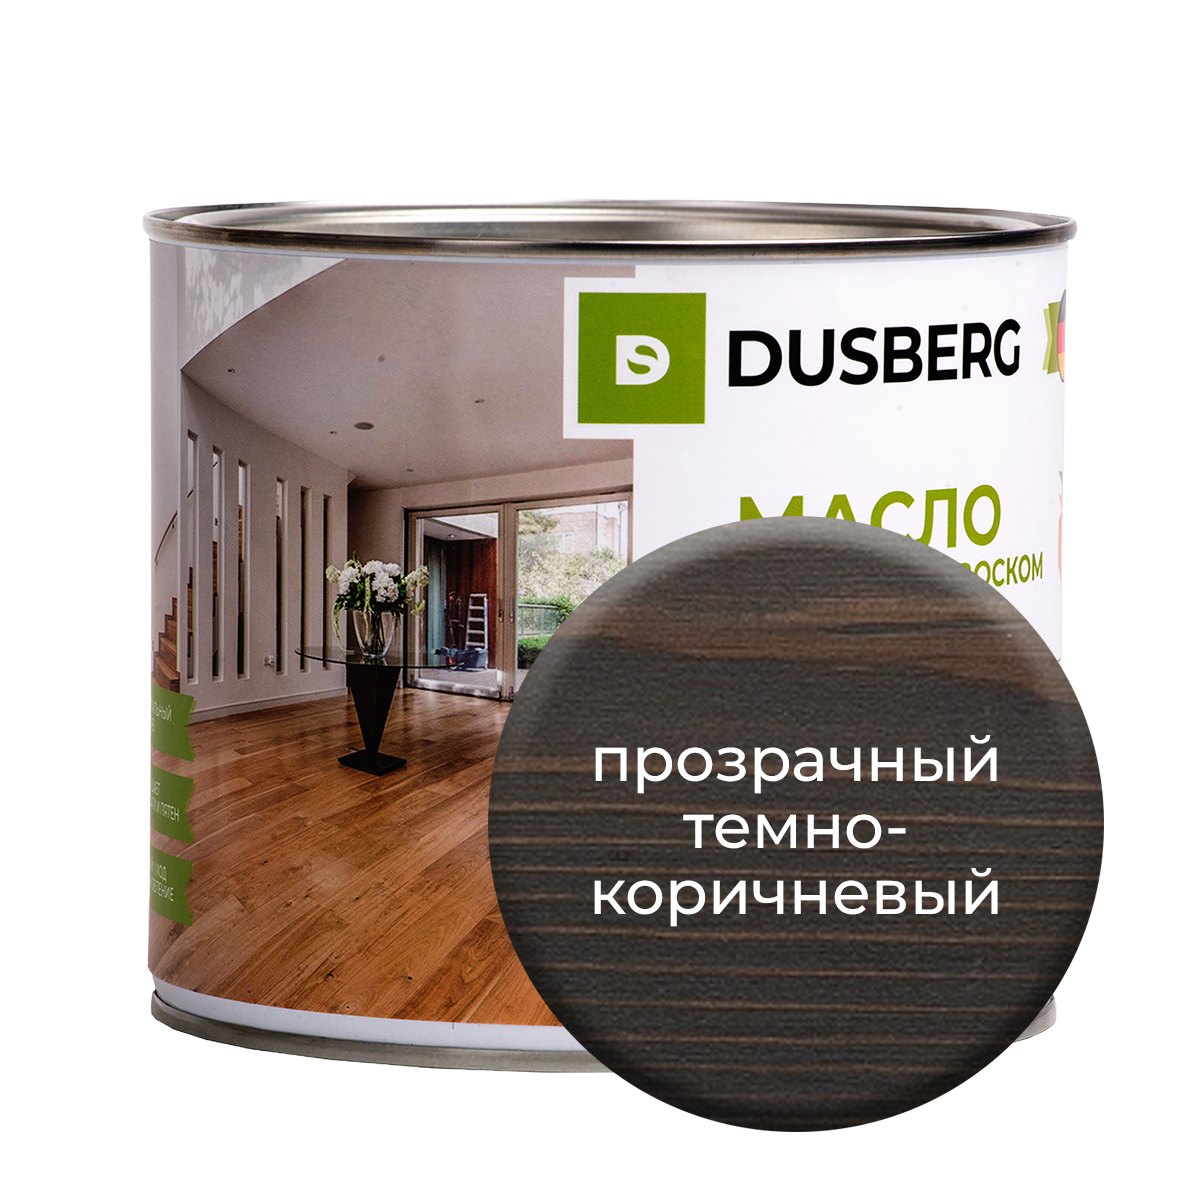 Масло Dusberg с твердым воском на бесцветной основе, 2 л Прозрачный темно-коричневый масло dusberg для дерева на бесцветной основе 750 мл светло коричневый